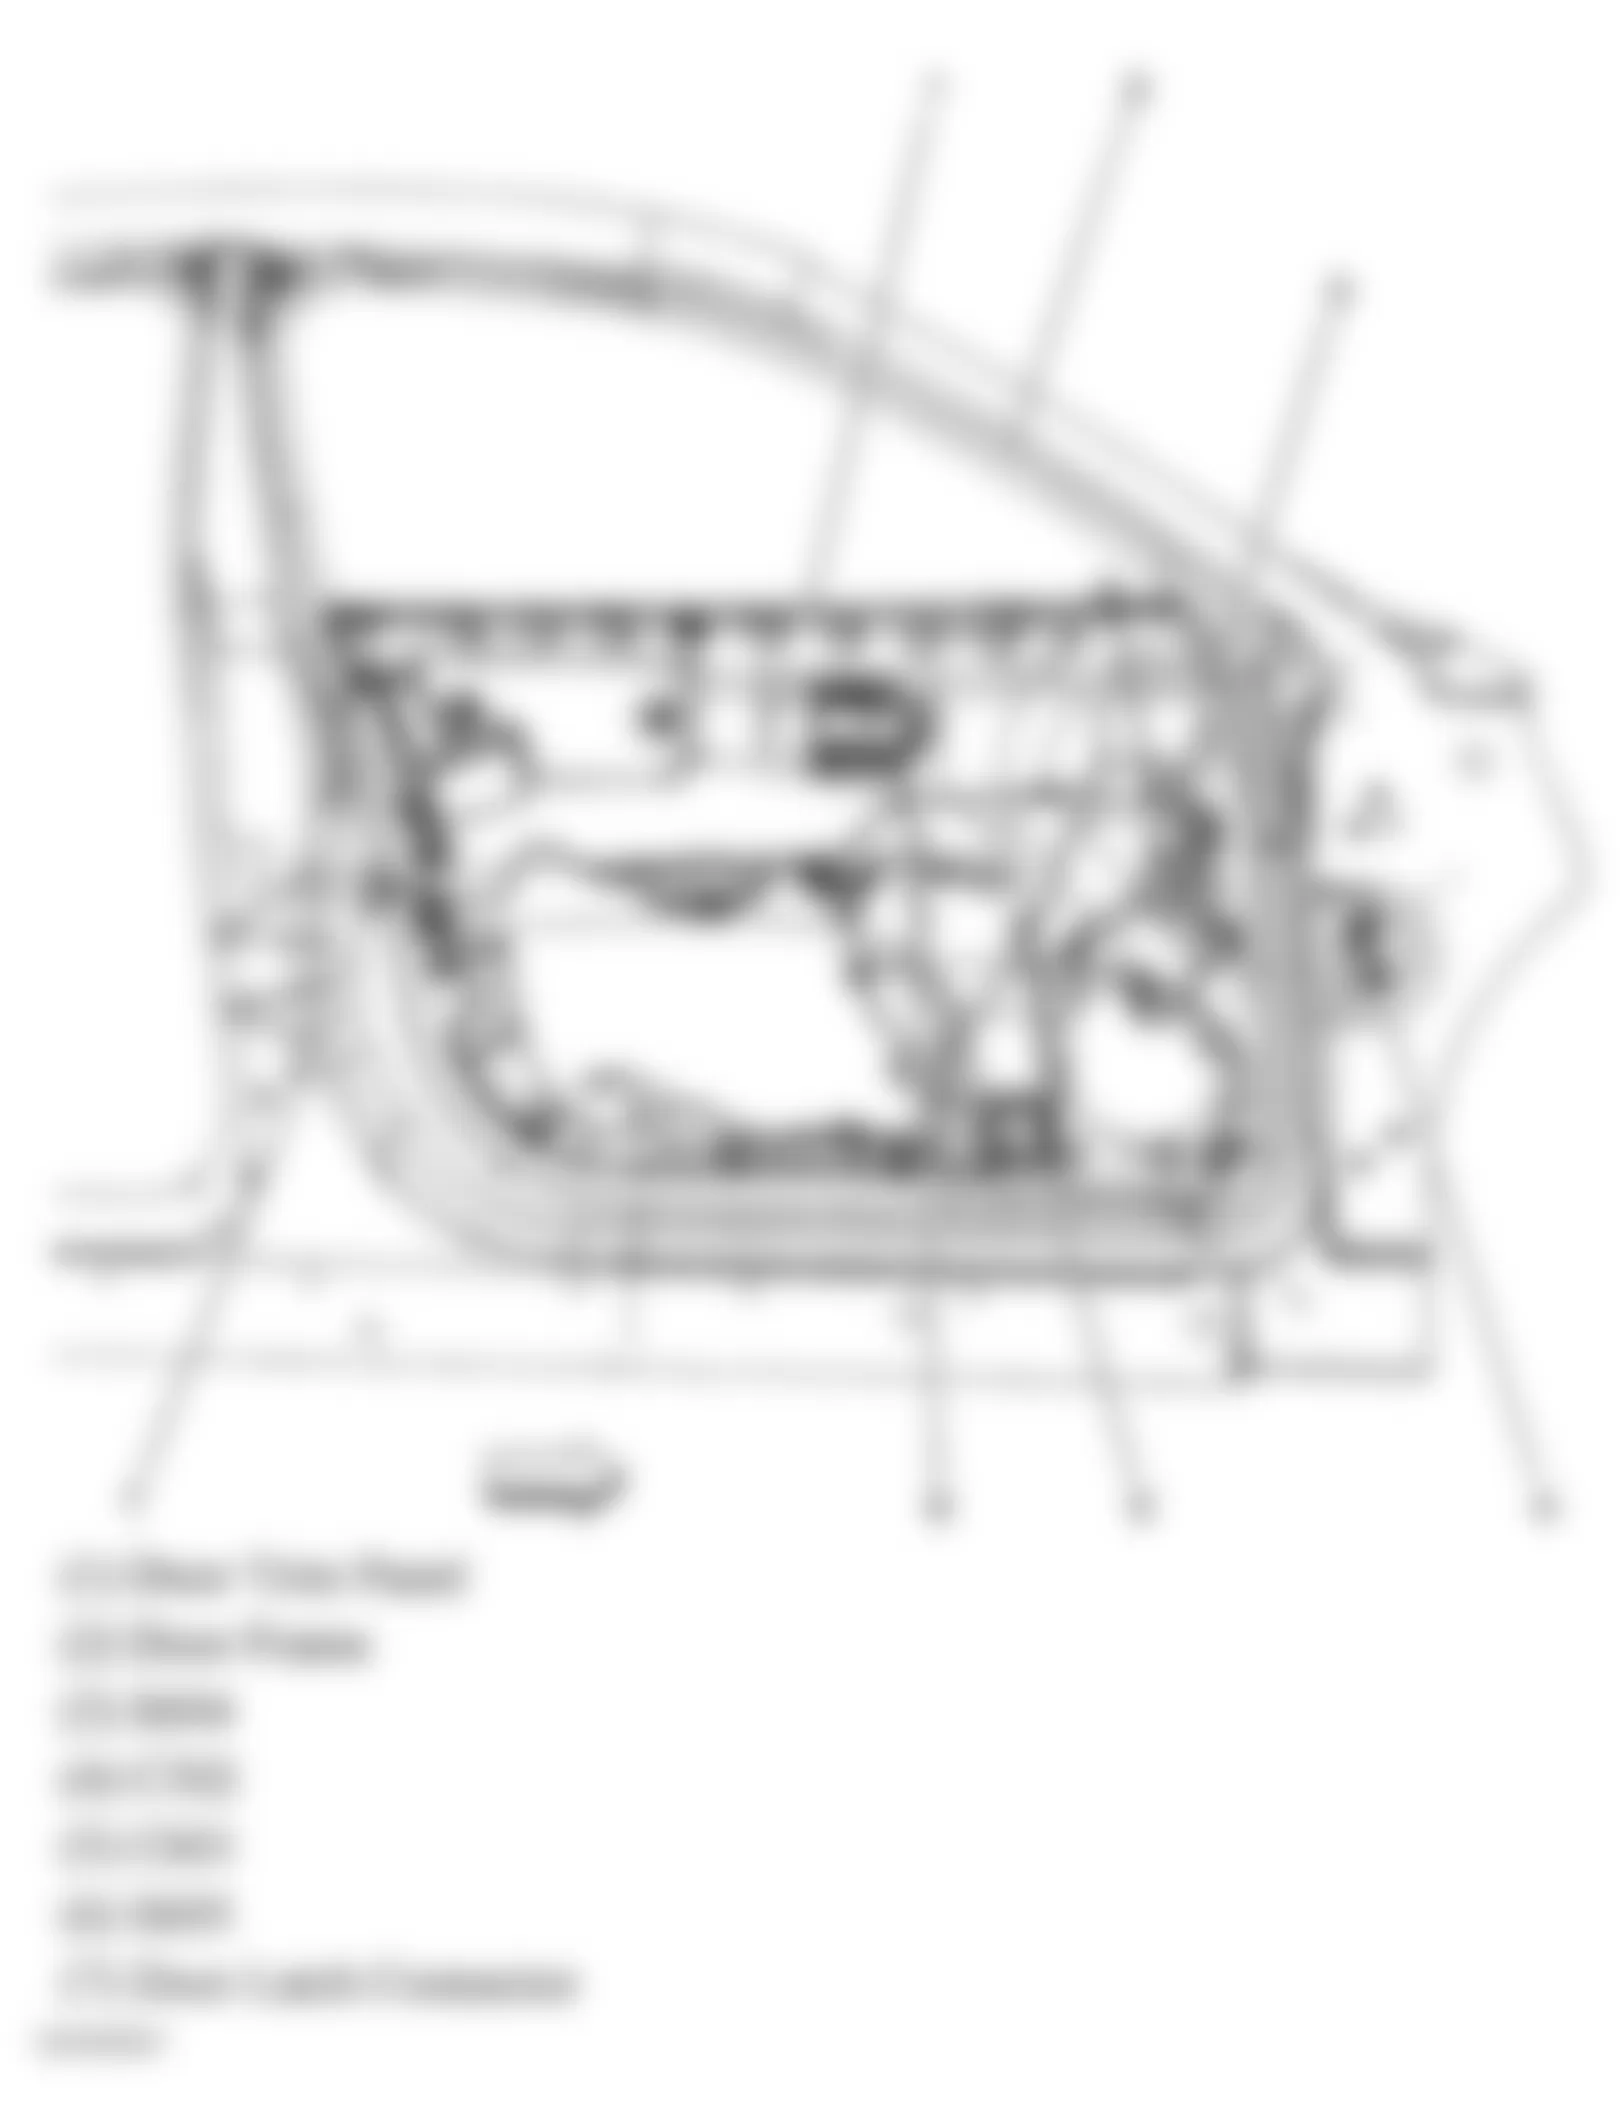 Buick LaCrosse CXL 2005 - Component Locations -  Front Passengers Door